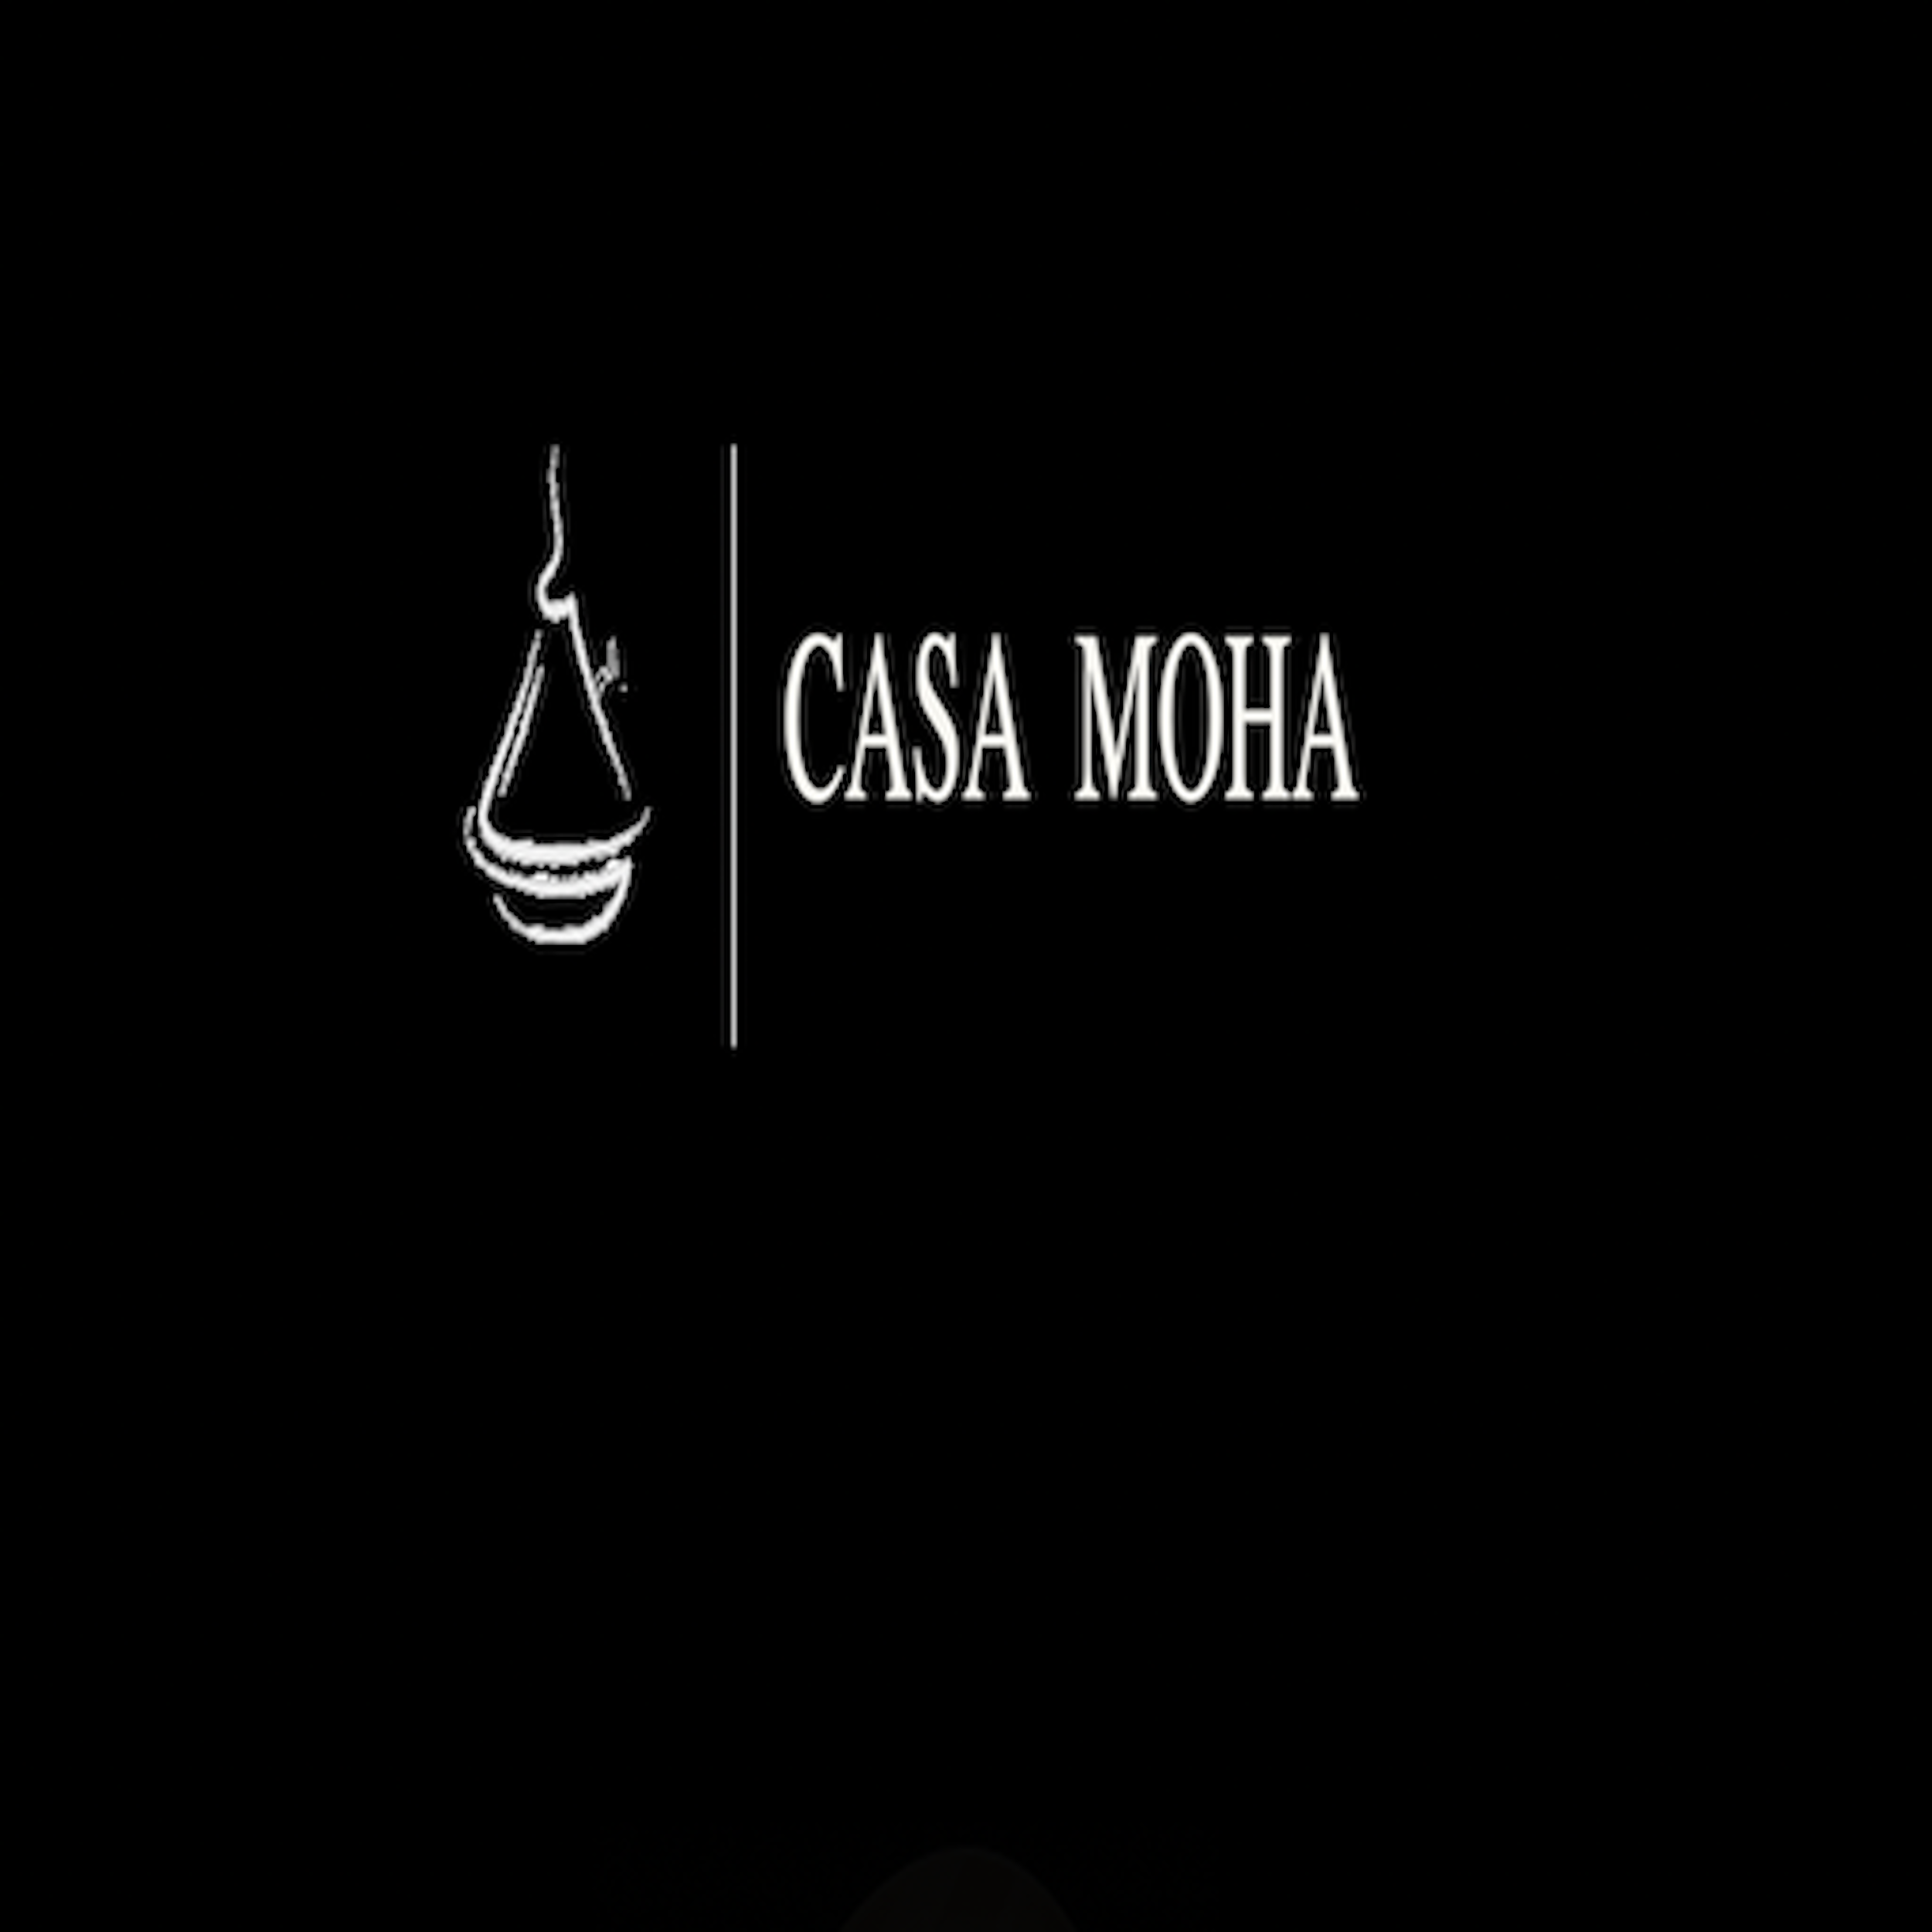 CASA MOHA